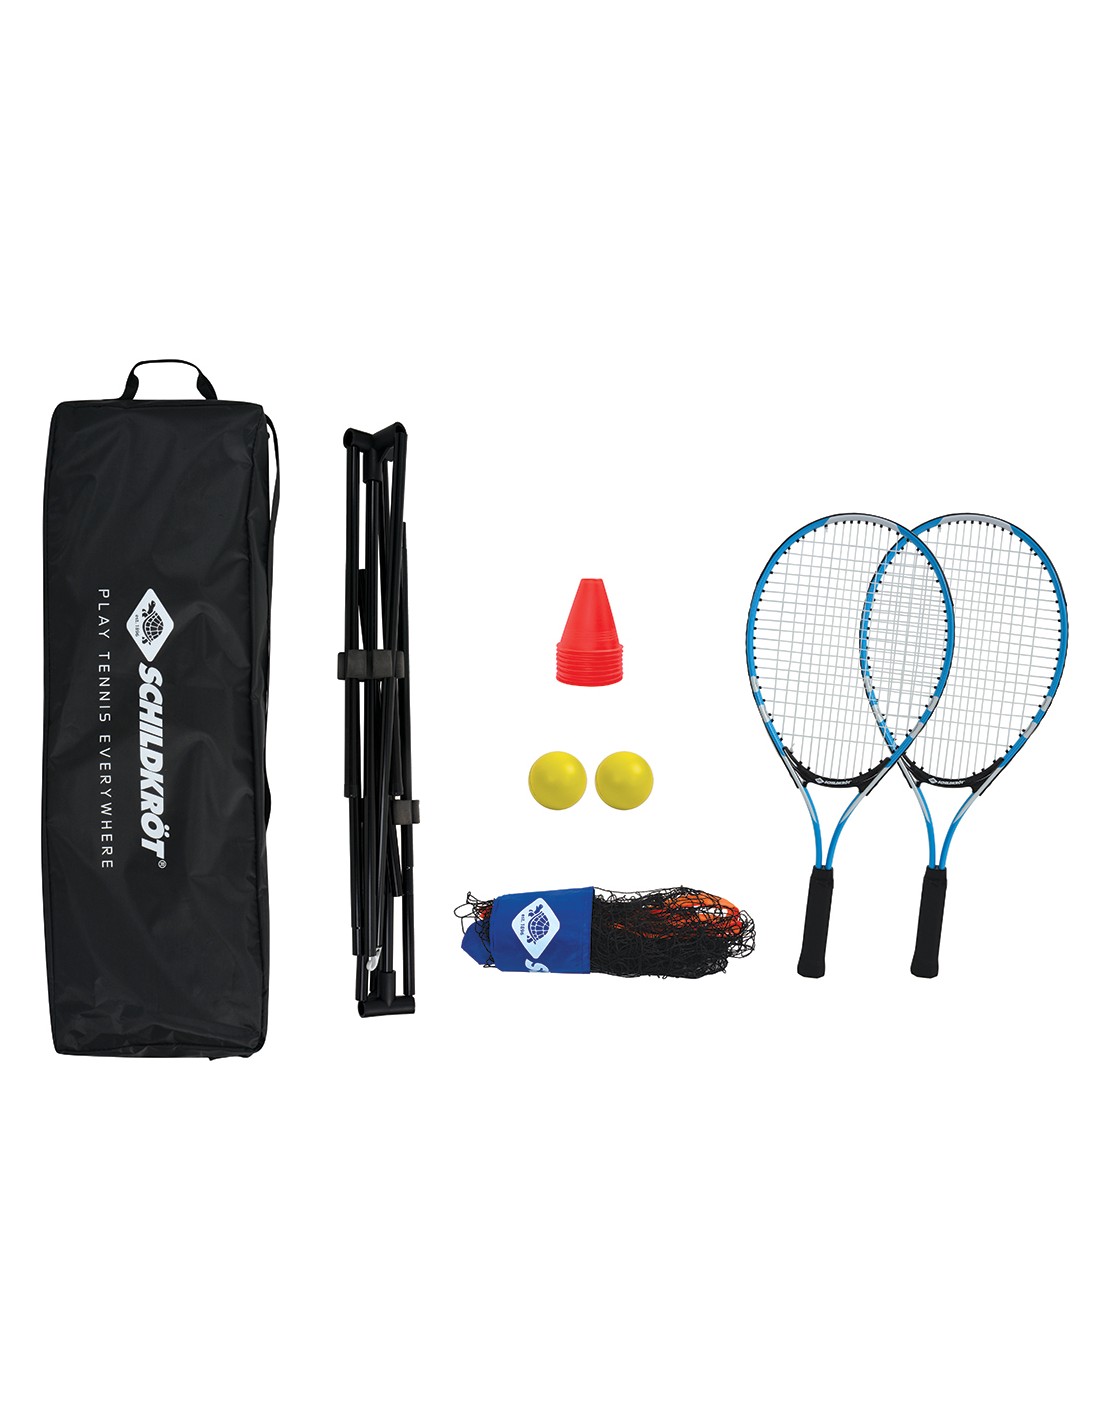 Schildkröt Backpack Tennis Set von Schildkröt Fun Sports